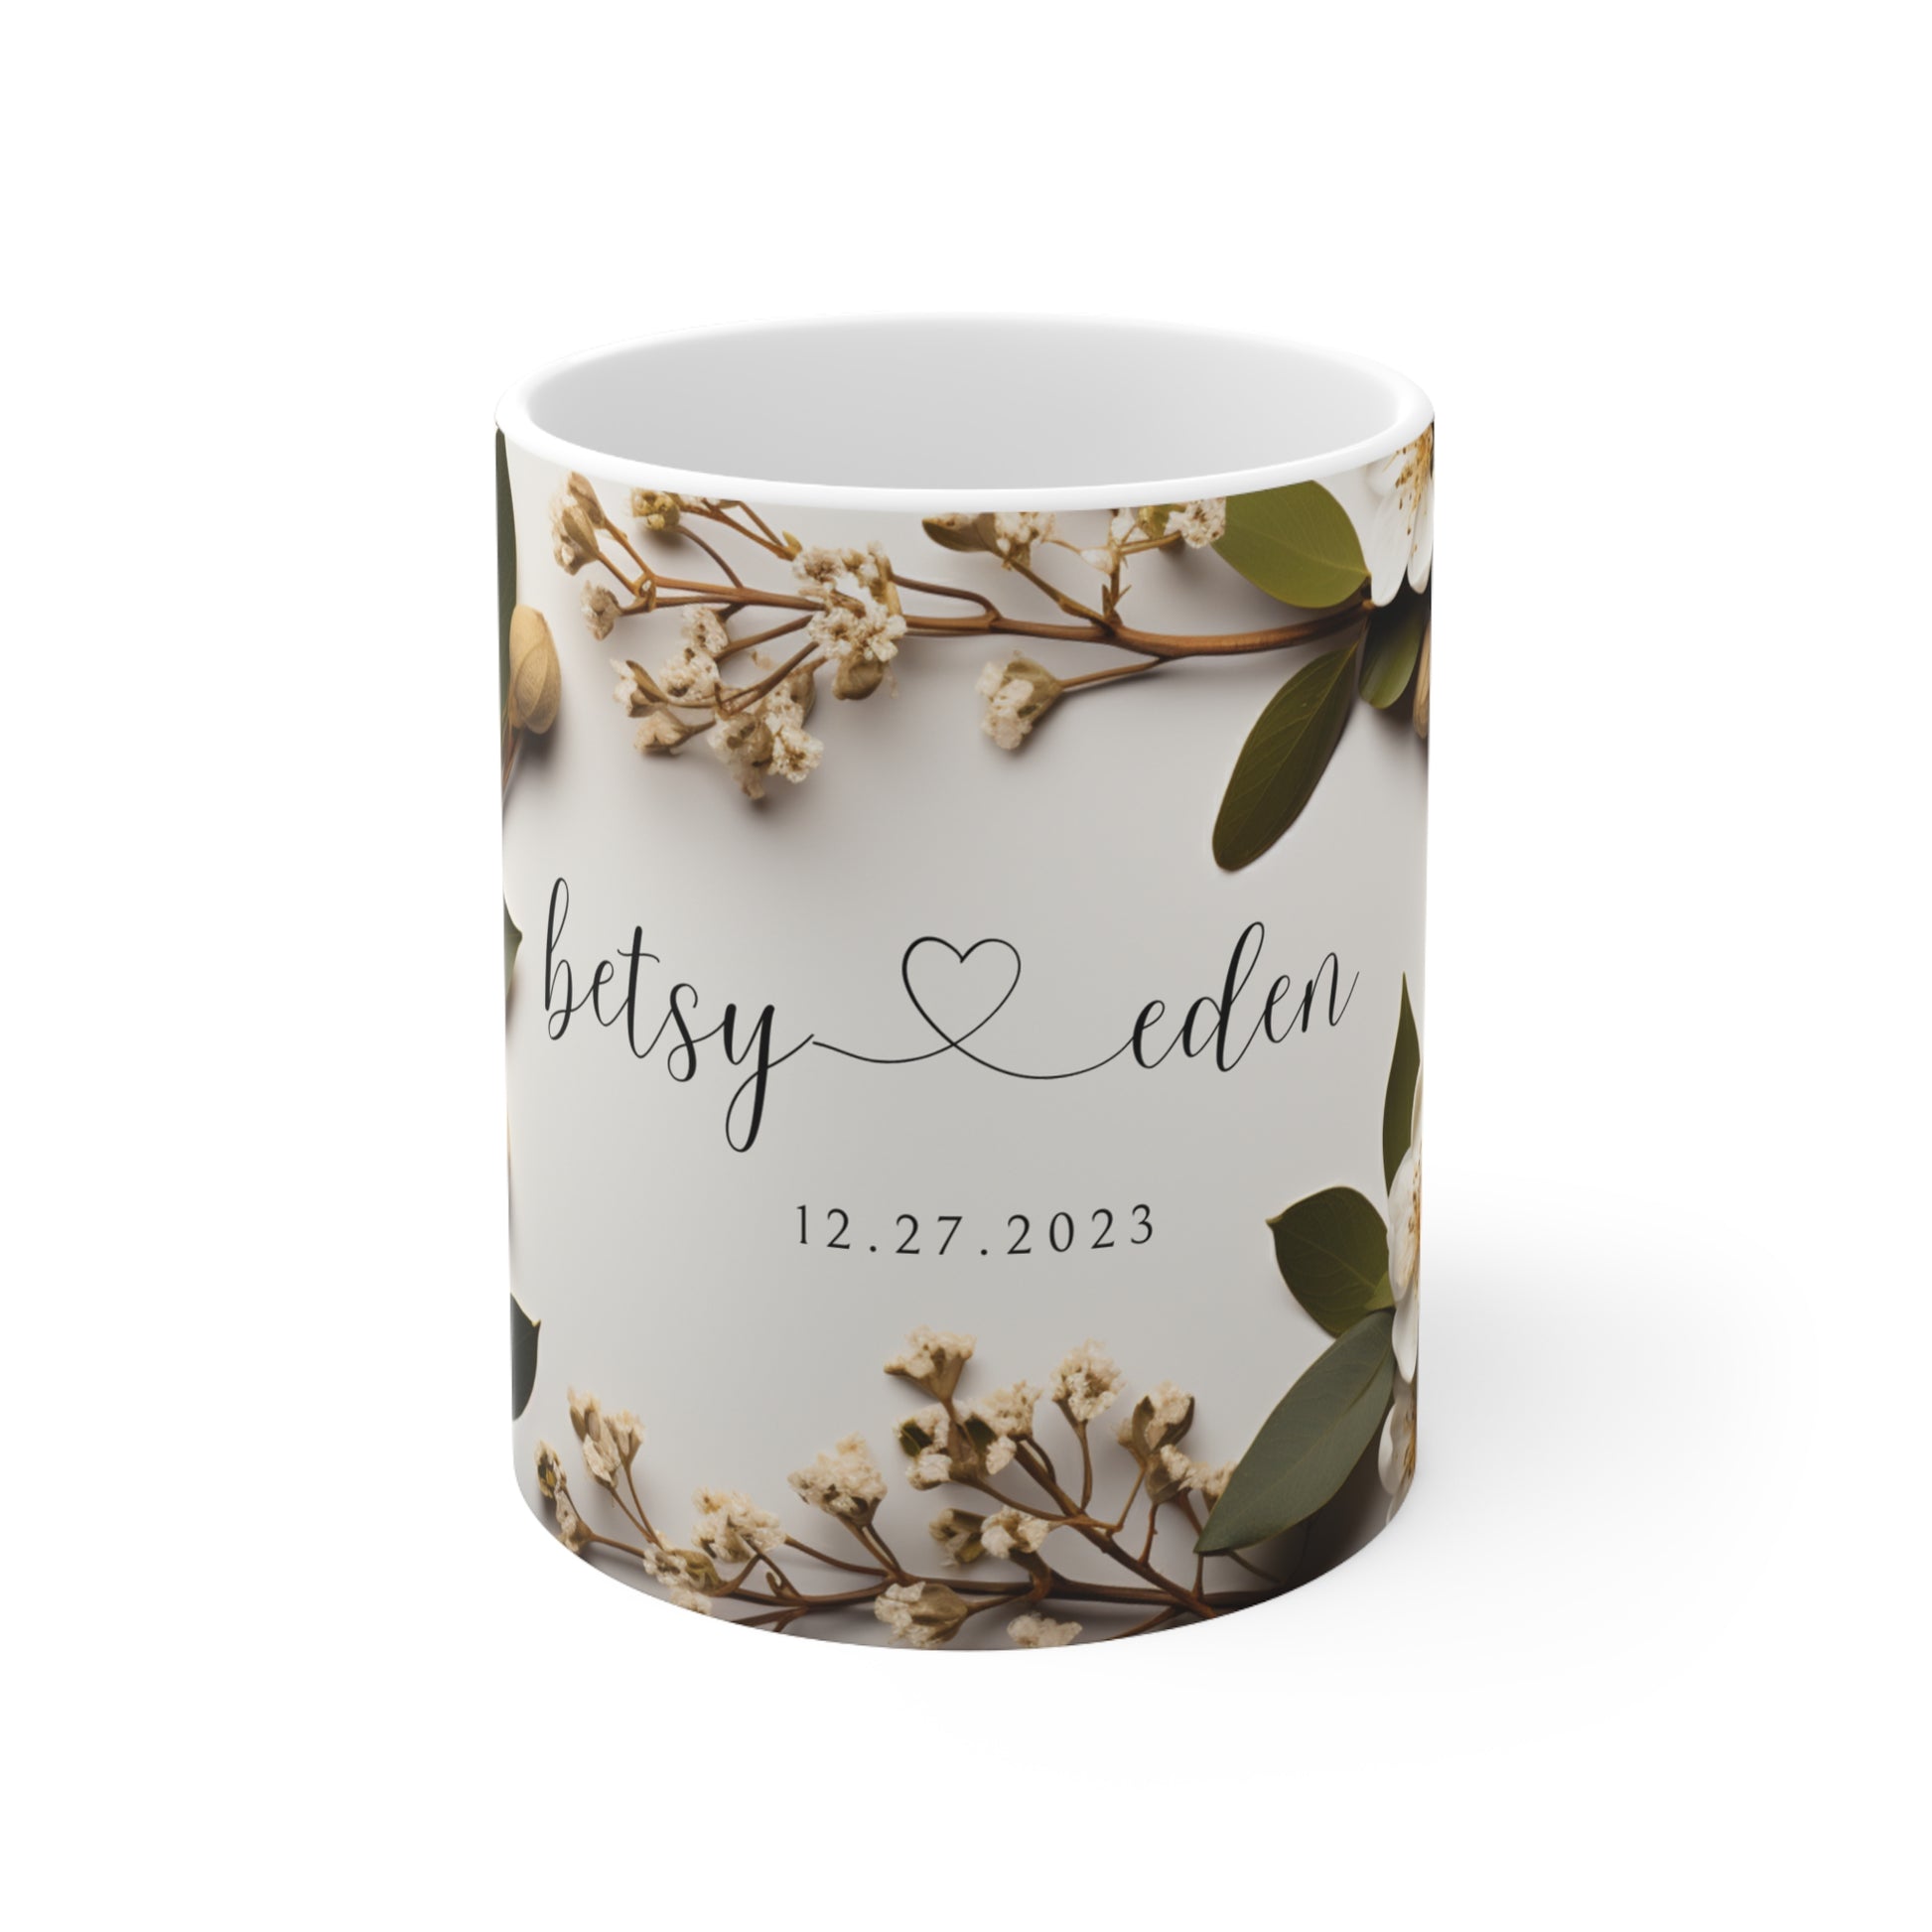 290 Wedding mug ideas  wedding mugs, mugs, wedding